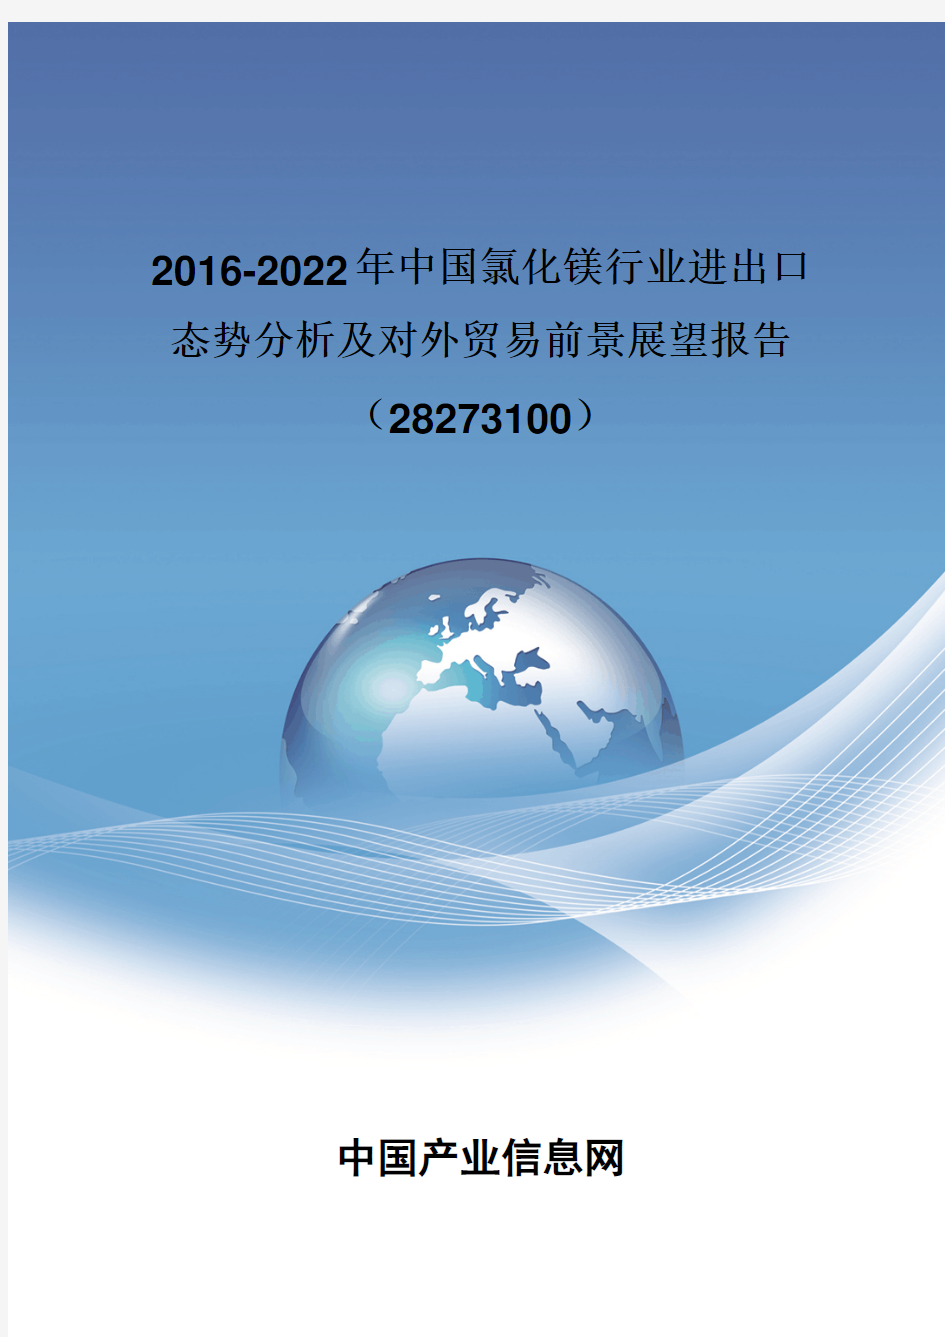 2016-2022年中国氯化镁行业进出口态势分析报告(28273100)